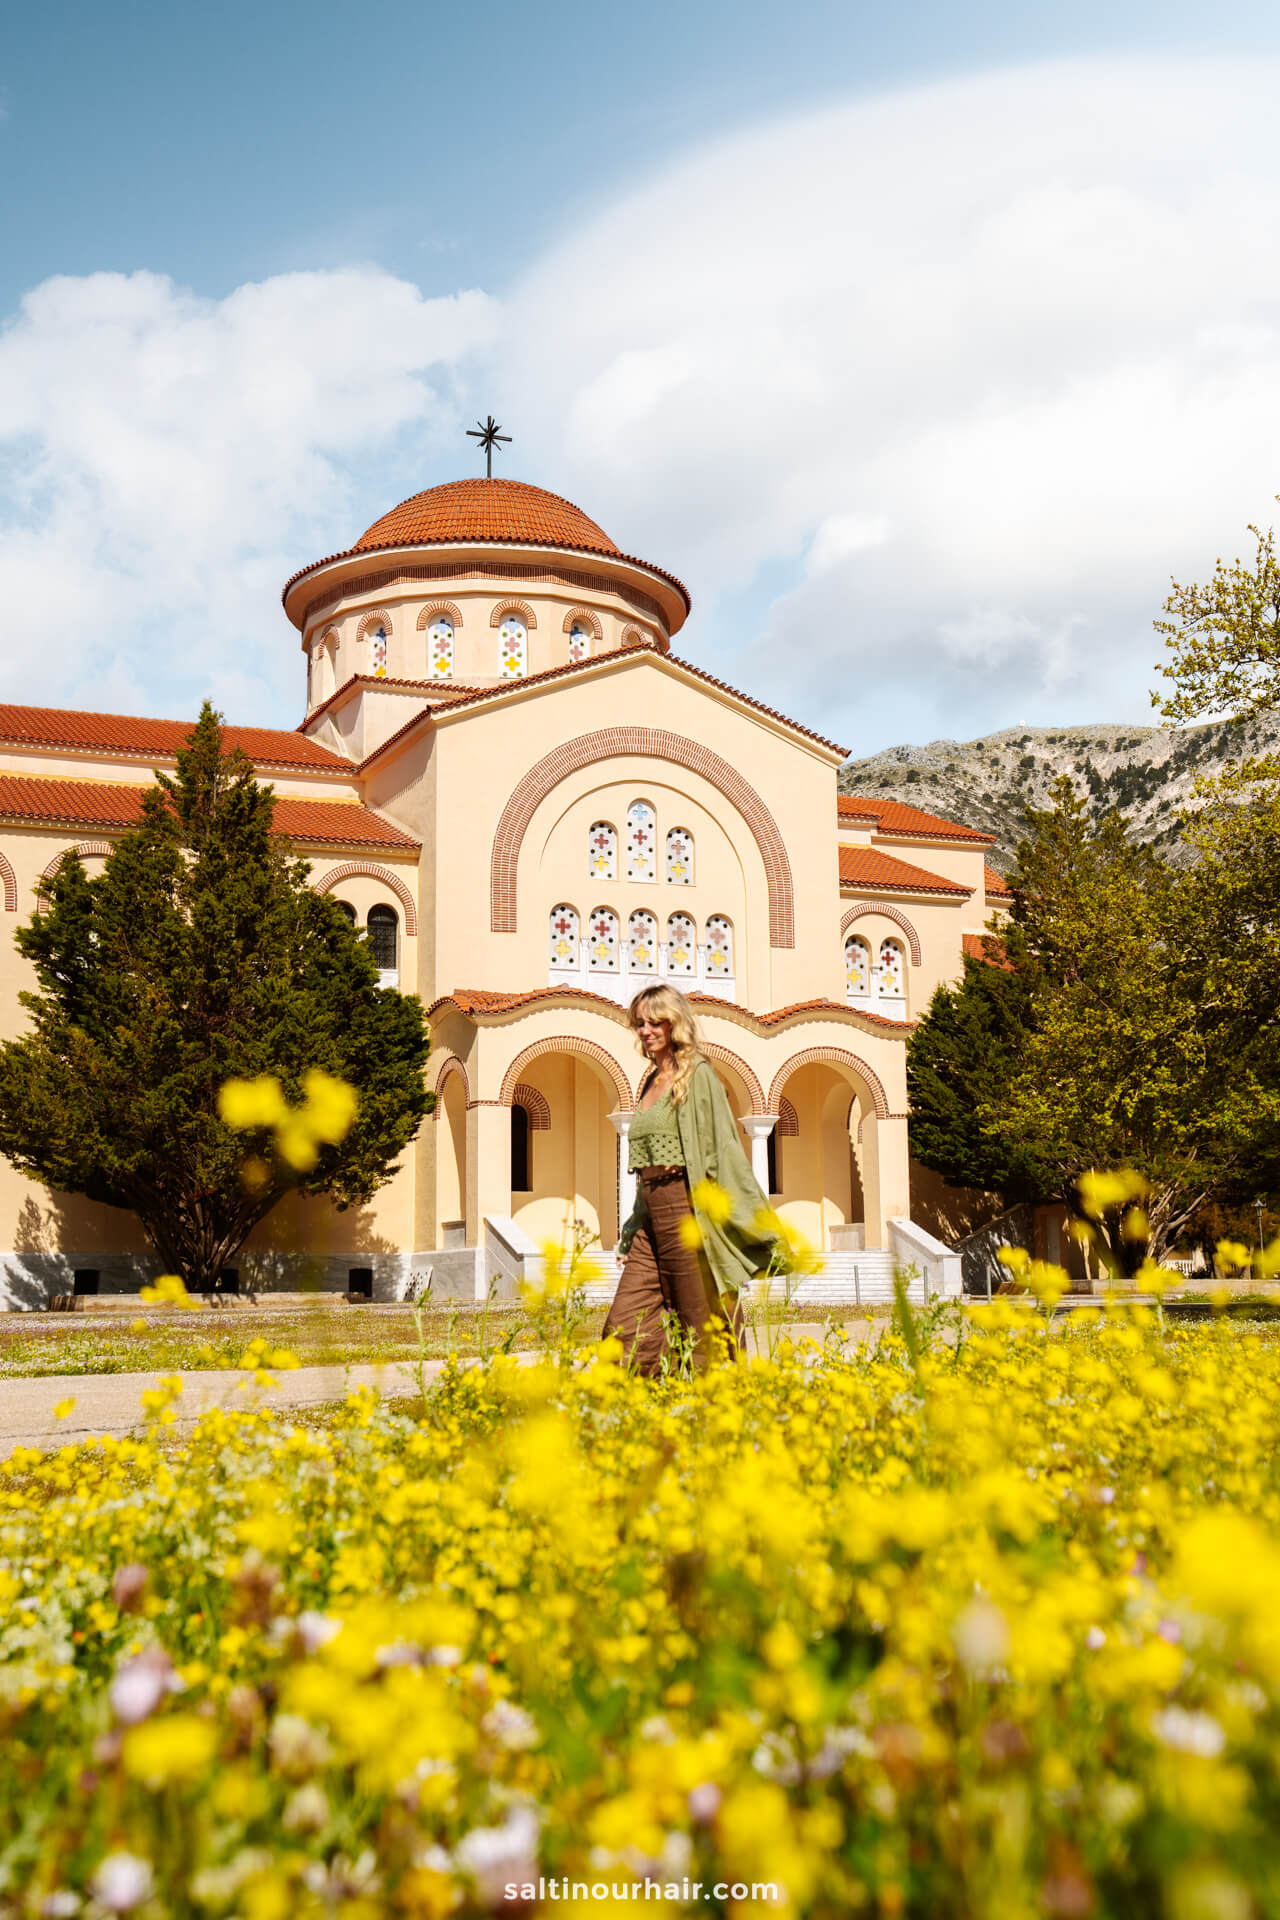 Monastery of Agios Gerasimos kefalonia greece